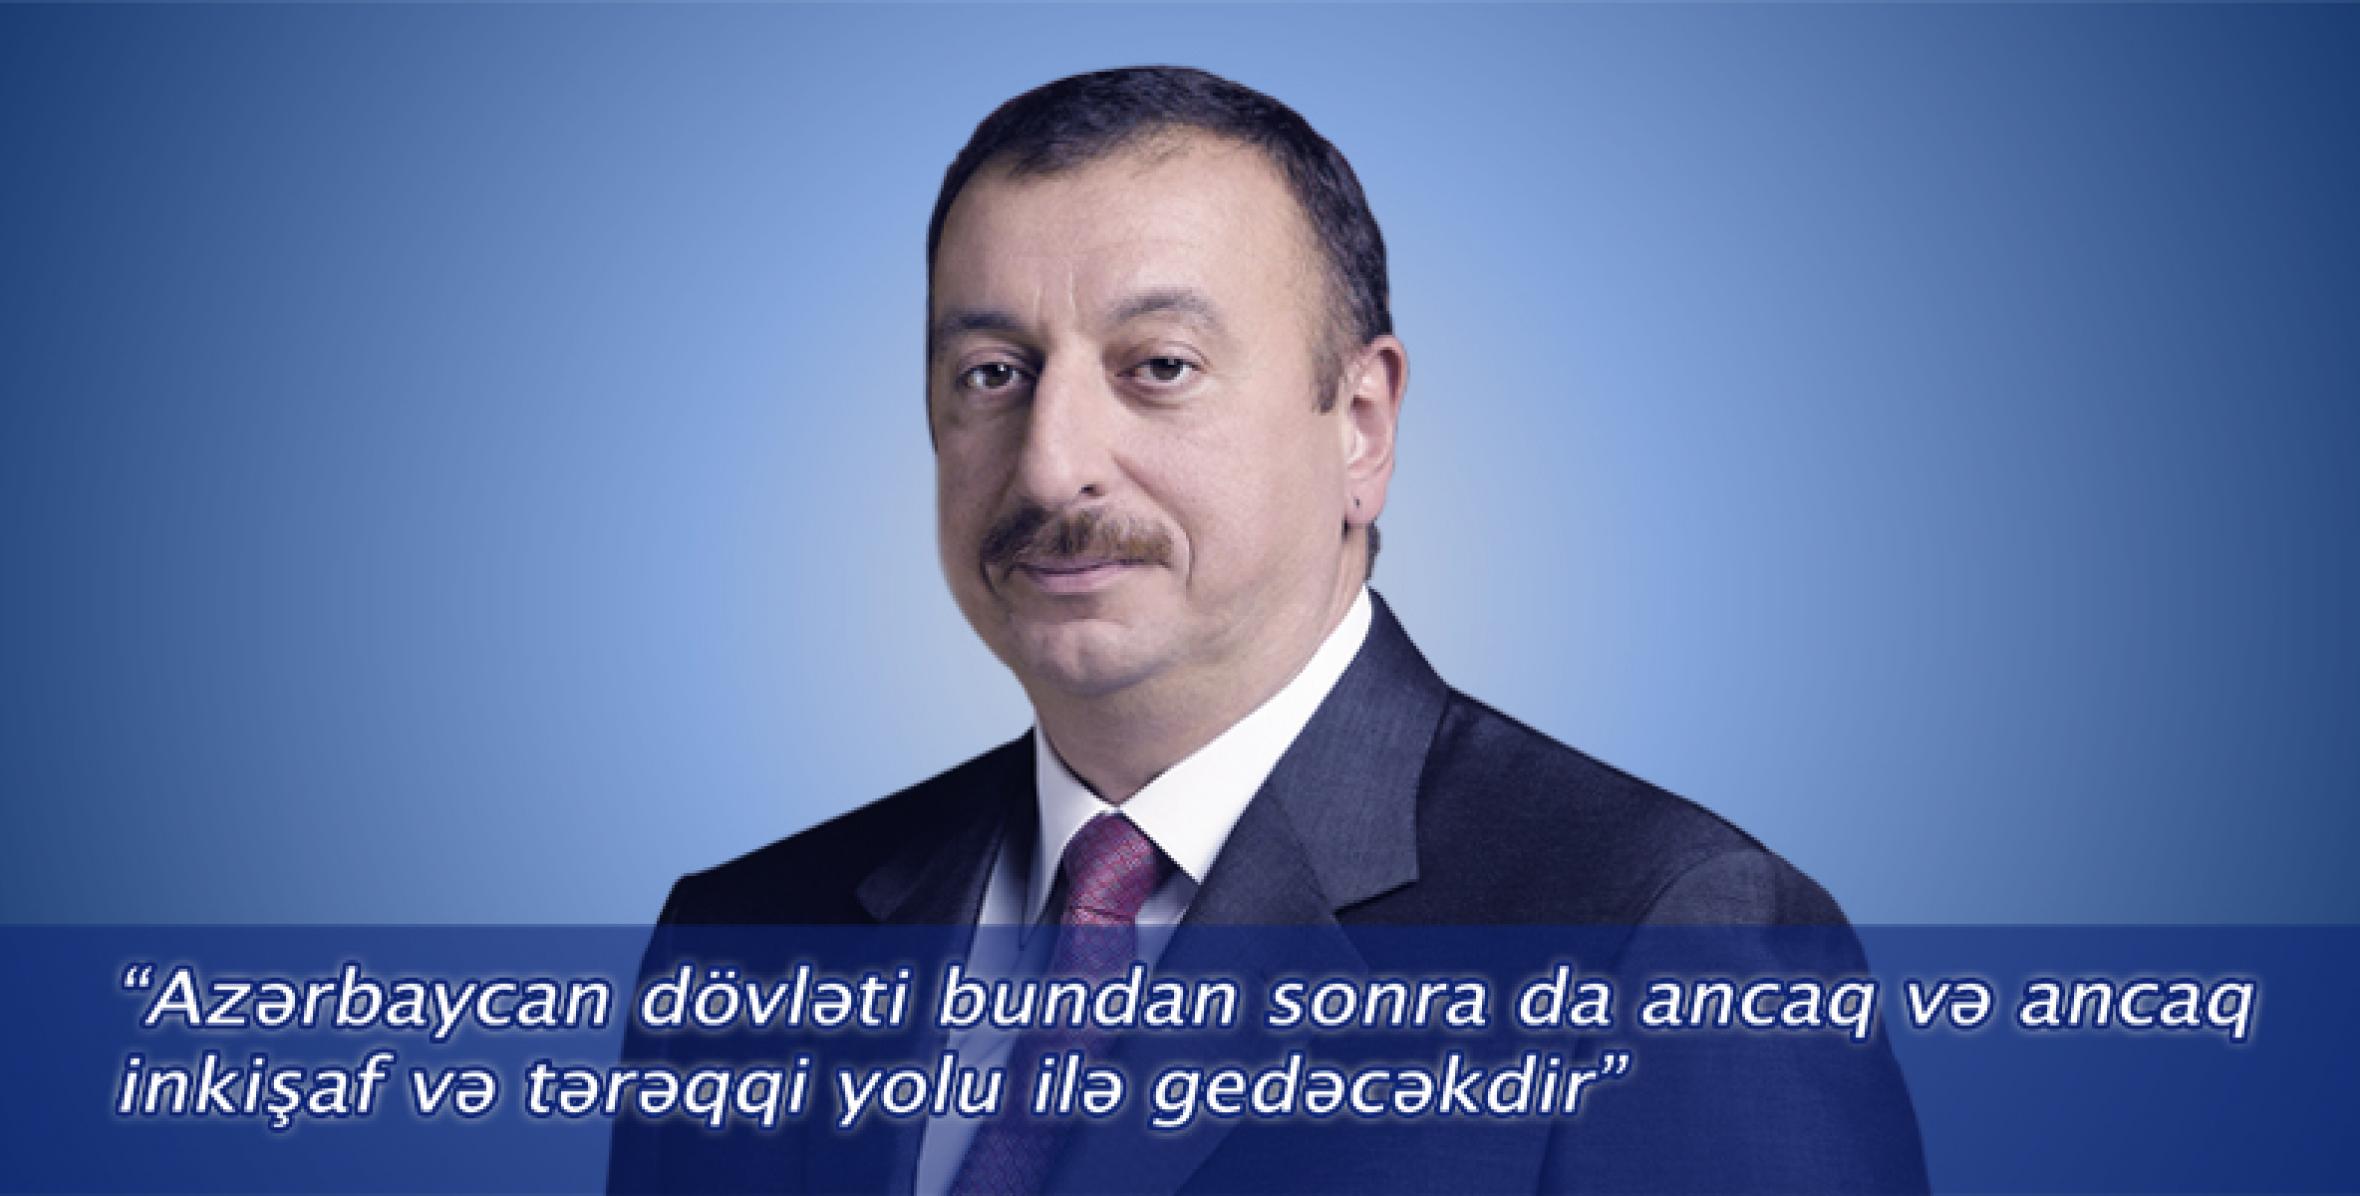 Поздравление Президента Ильхама Алиева по случаю Дня солидарности азербайджанцев мира и Нового года